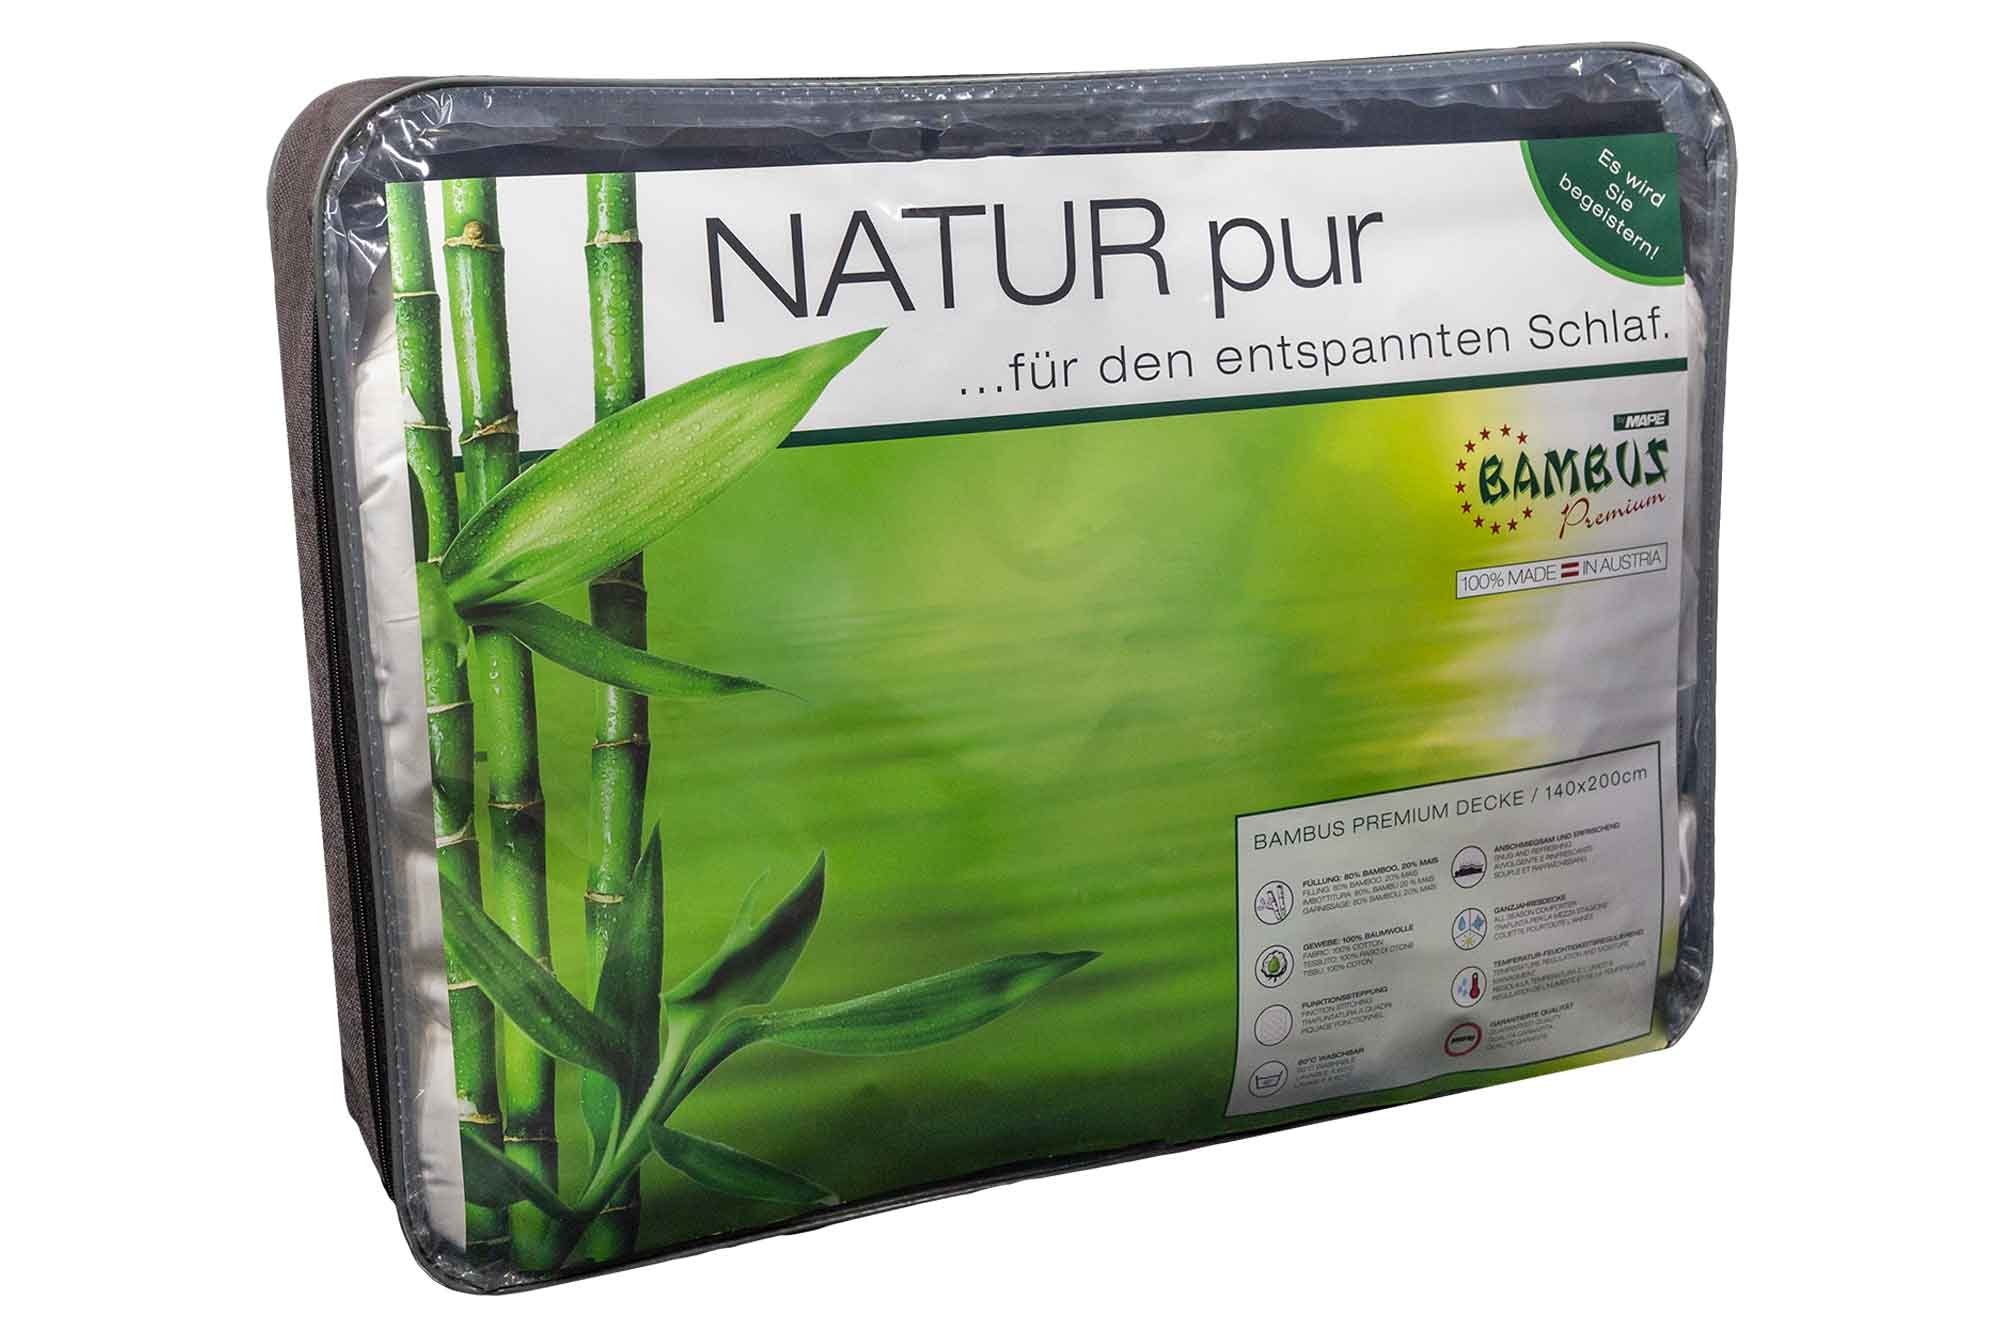 Naturfaserbettdecke, »Bambus Premium Decke 140 x 200 cm«, Eccovital,  Füllung: Bambus online kaufen | OTTO